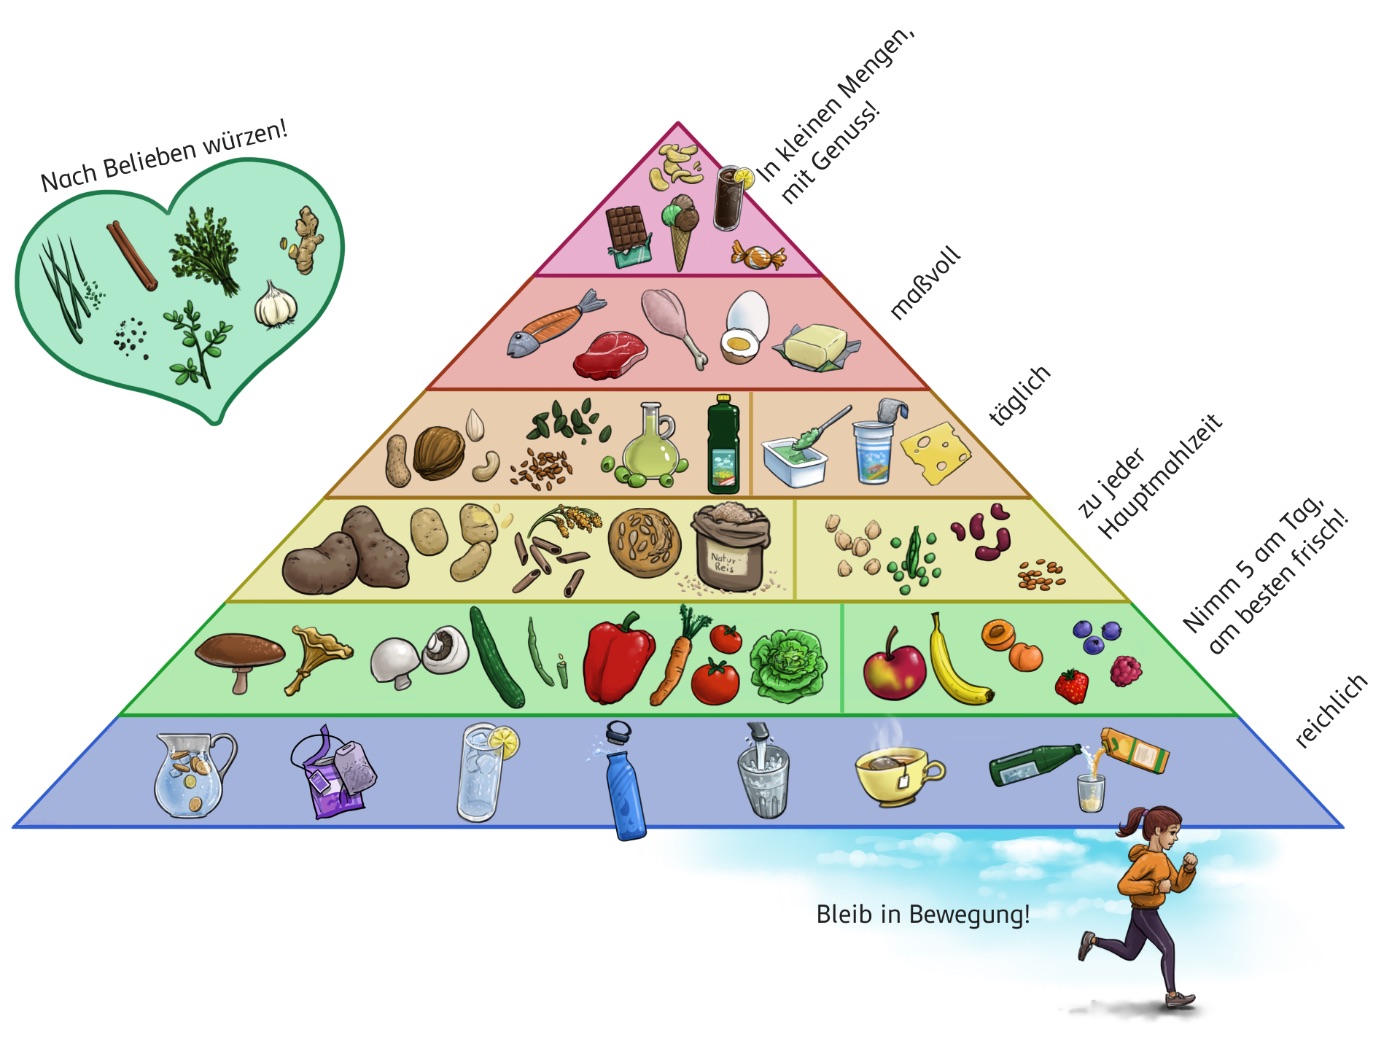 Ernährungspyramide: An der Spitze sind Süßigkeiten und Snacks, darunter Tierische Eiweiße und Fette, dann Pflanzliche Öle, Nüsse und Milchprodukte. Darunter sind Getreideprodukte, Kartoffeln und Hülsenfrüchte, in der vorletzten Zeile sind Pilze, Obst und Gemüse und ganz unten sind ungesüßte Getränke. Daneben sind Gewürze und Kräuter.